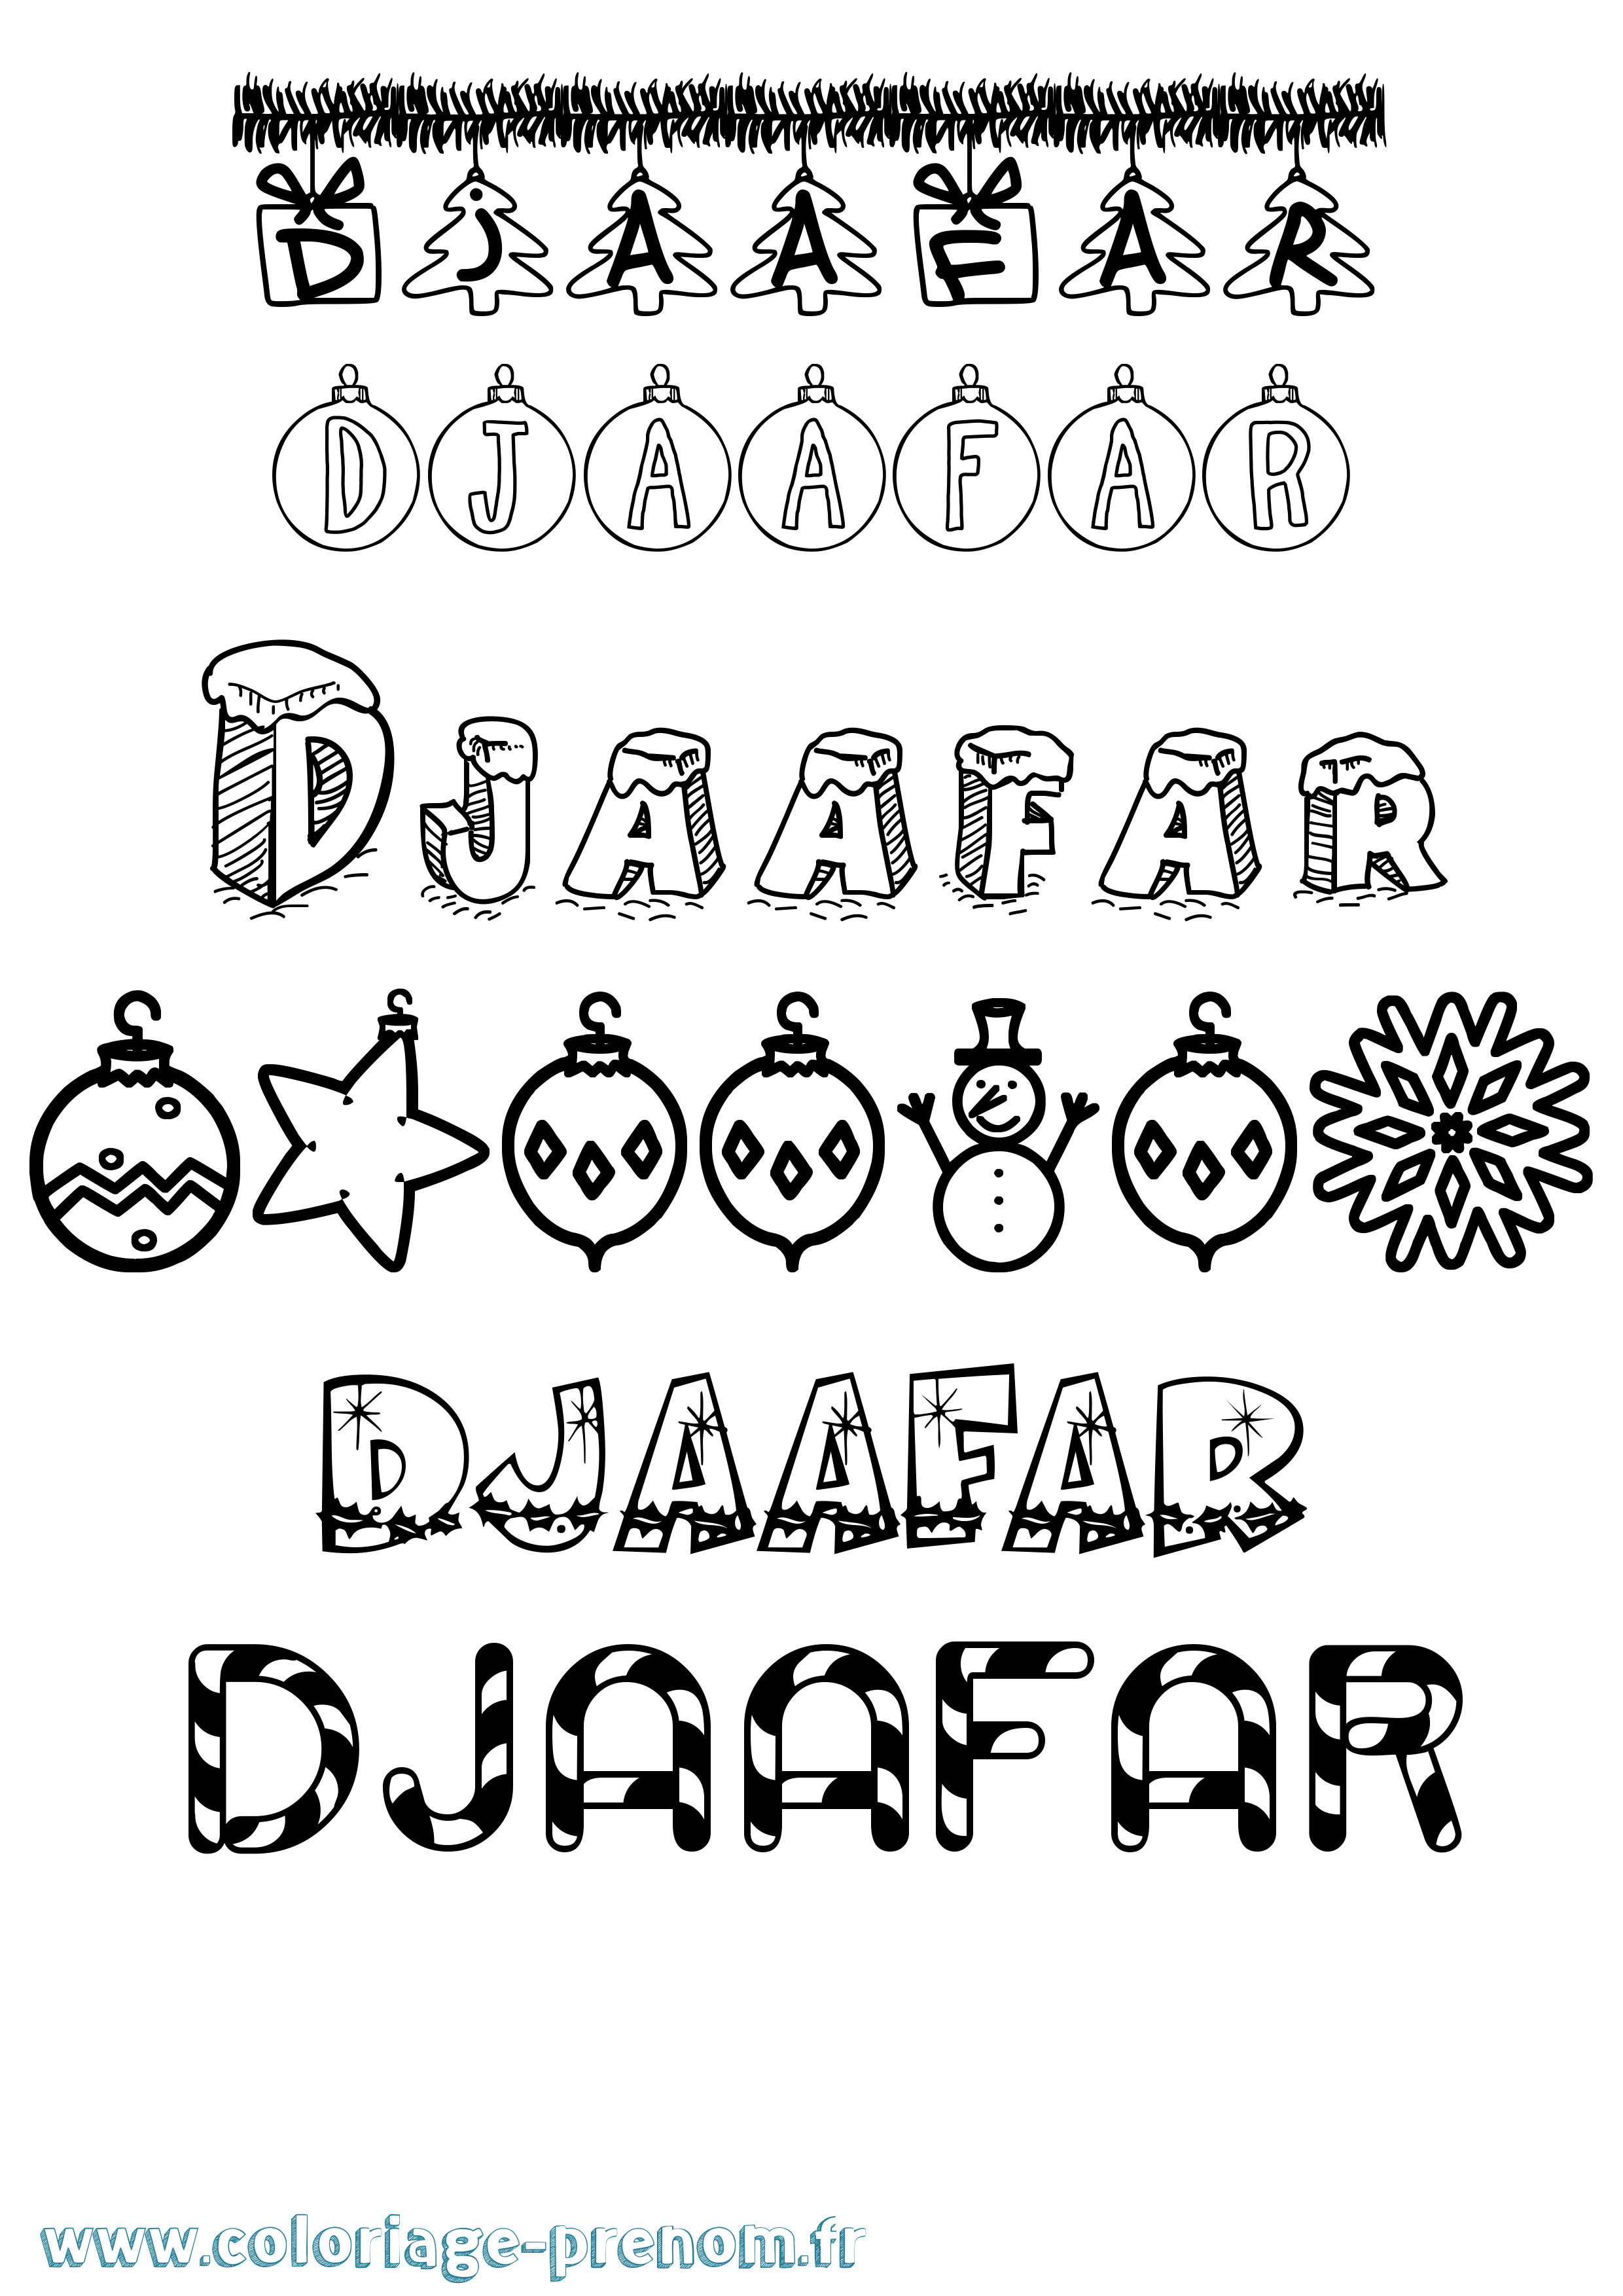 Coloriage prénom Djaafar Noël